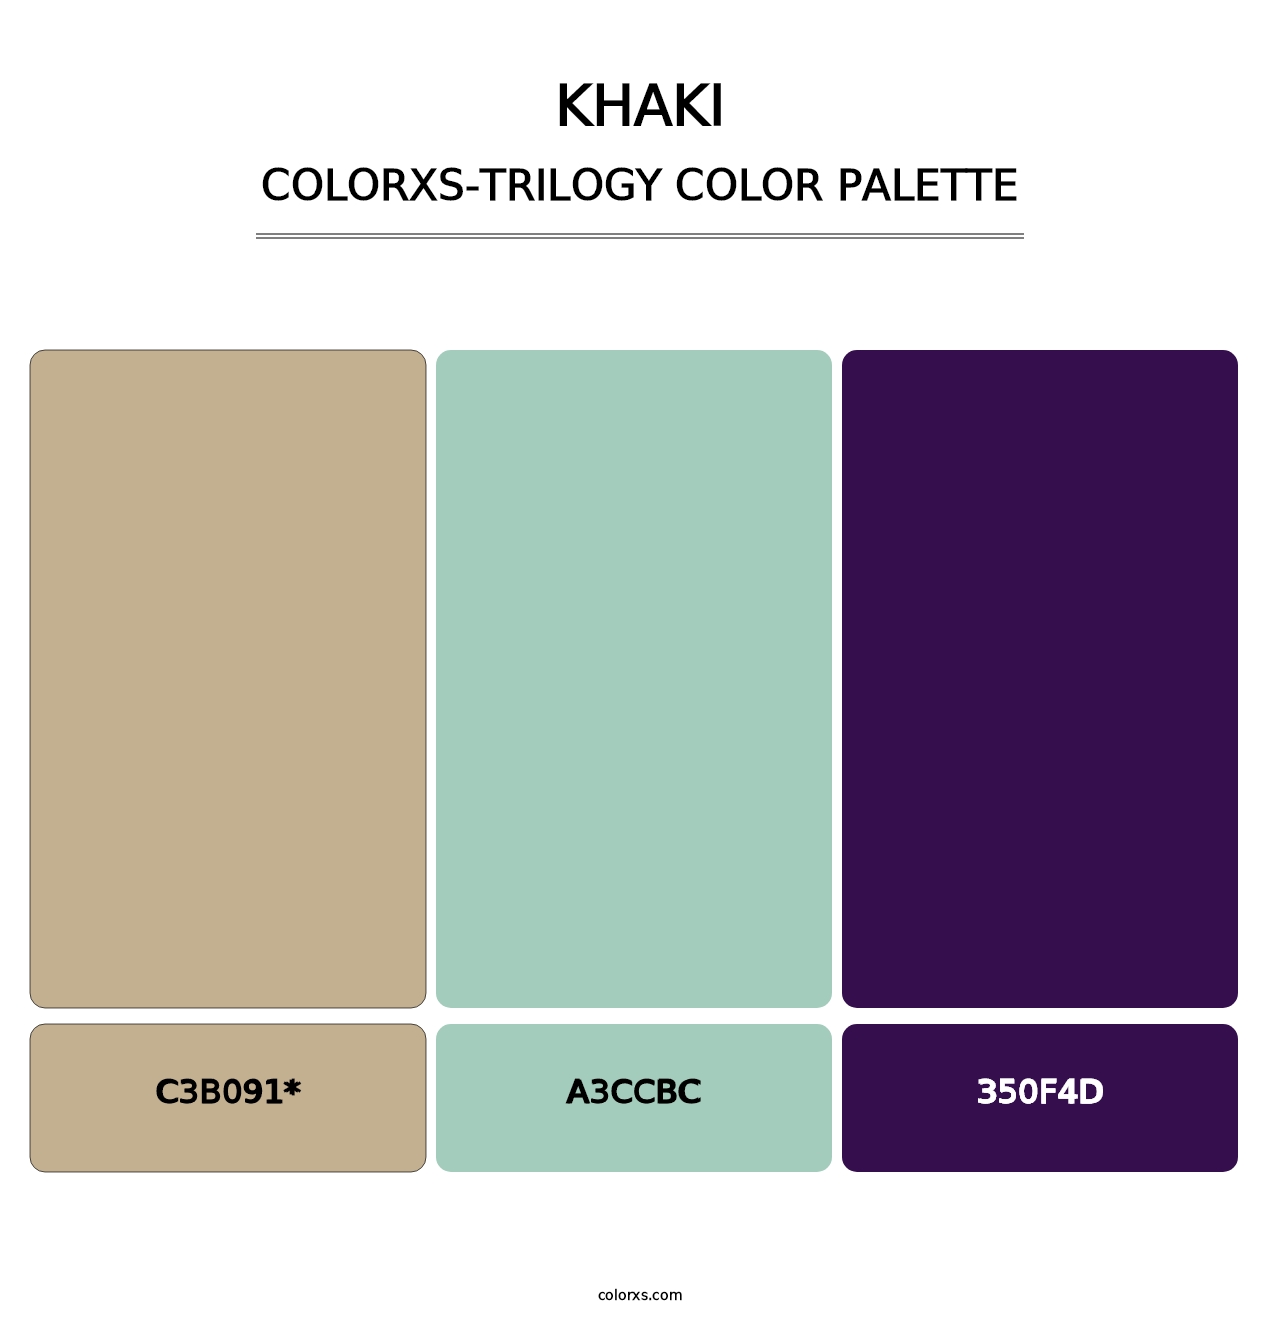 Khaki - Colorxs Trilogy Palette